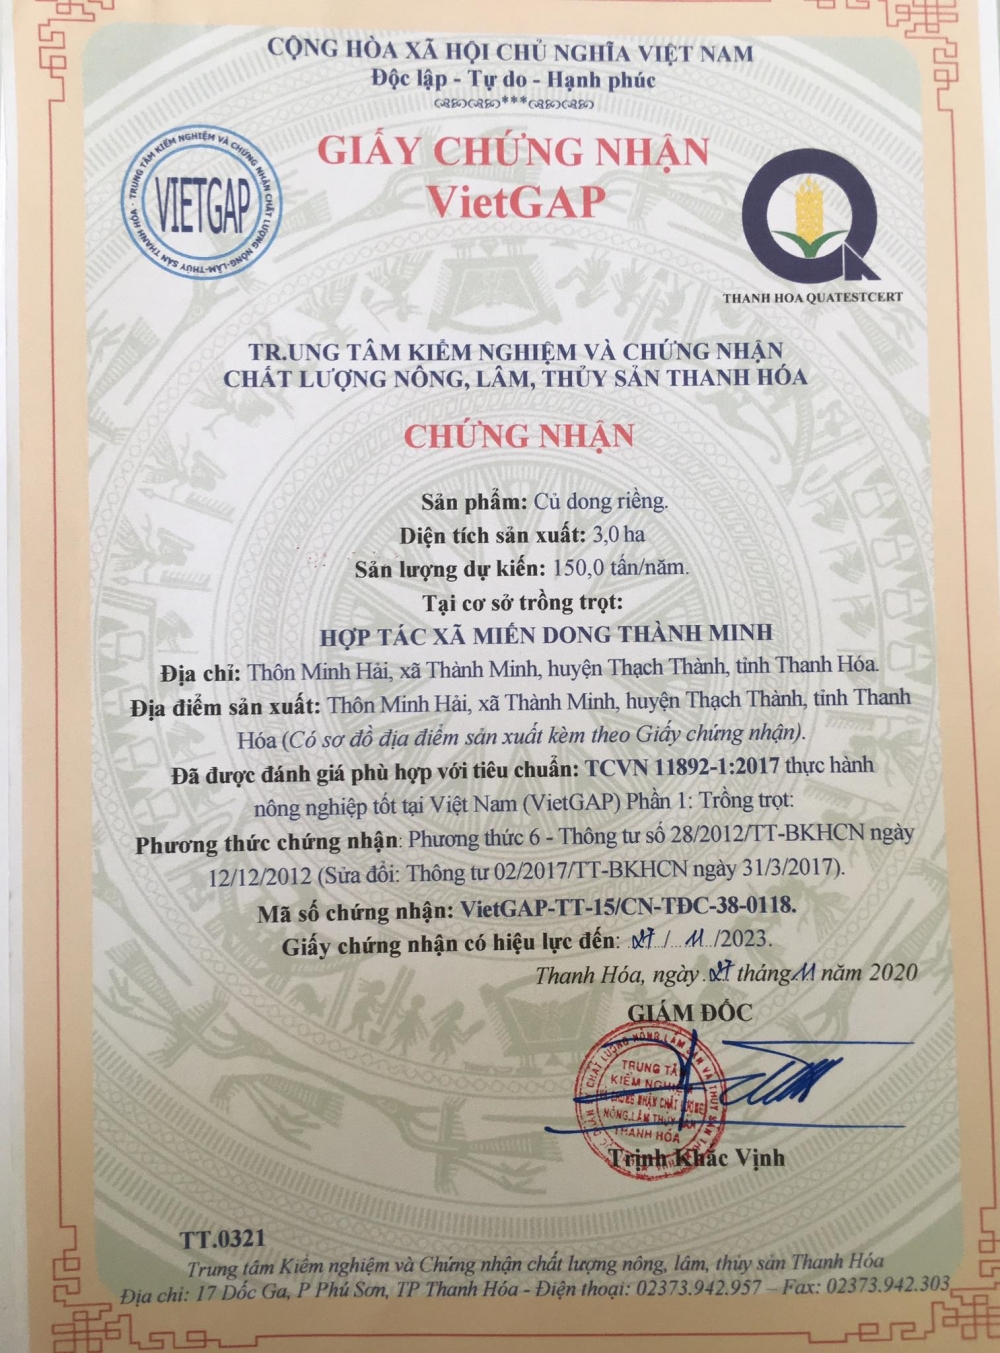 Thương hiệu miến dong Thành Minh đạt tiêu chuẩn VietGAP được người tiêu dùng ưa chuộng